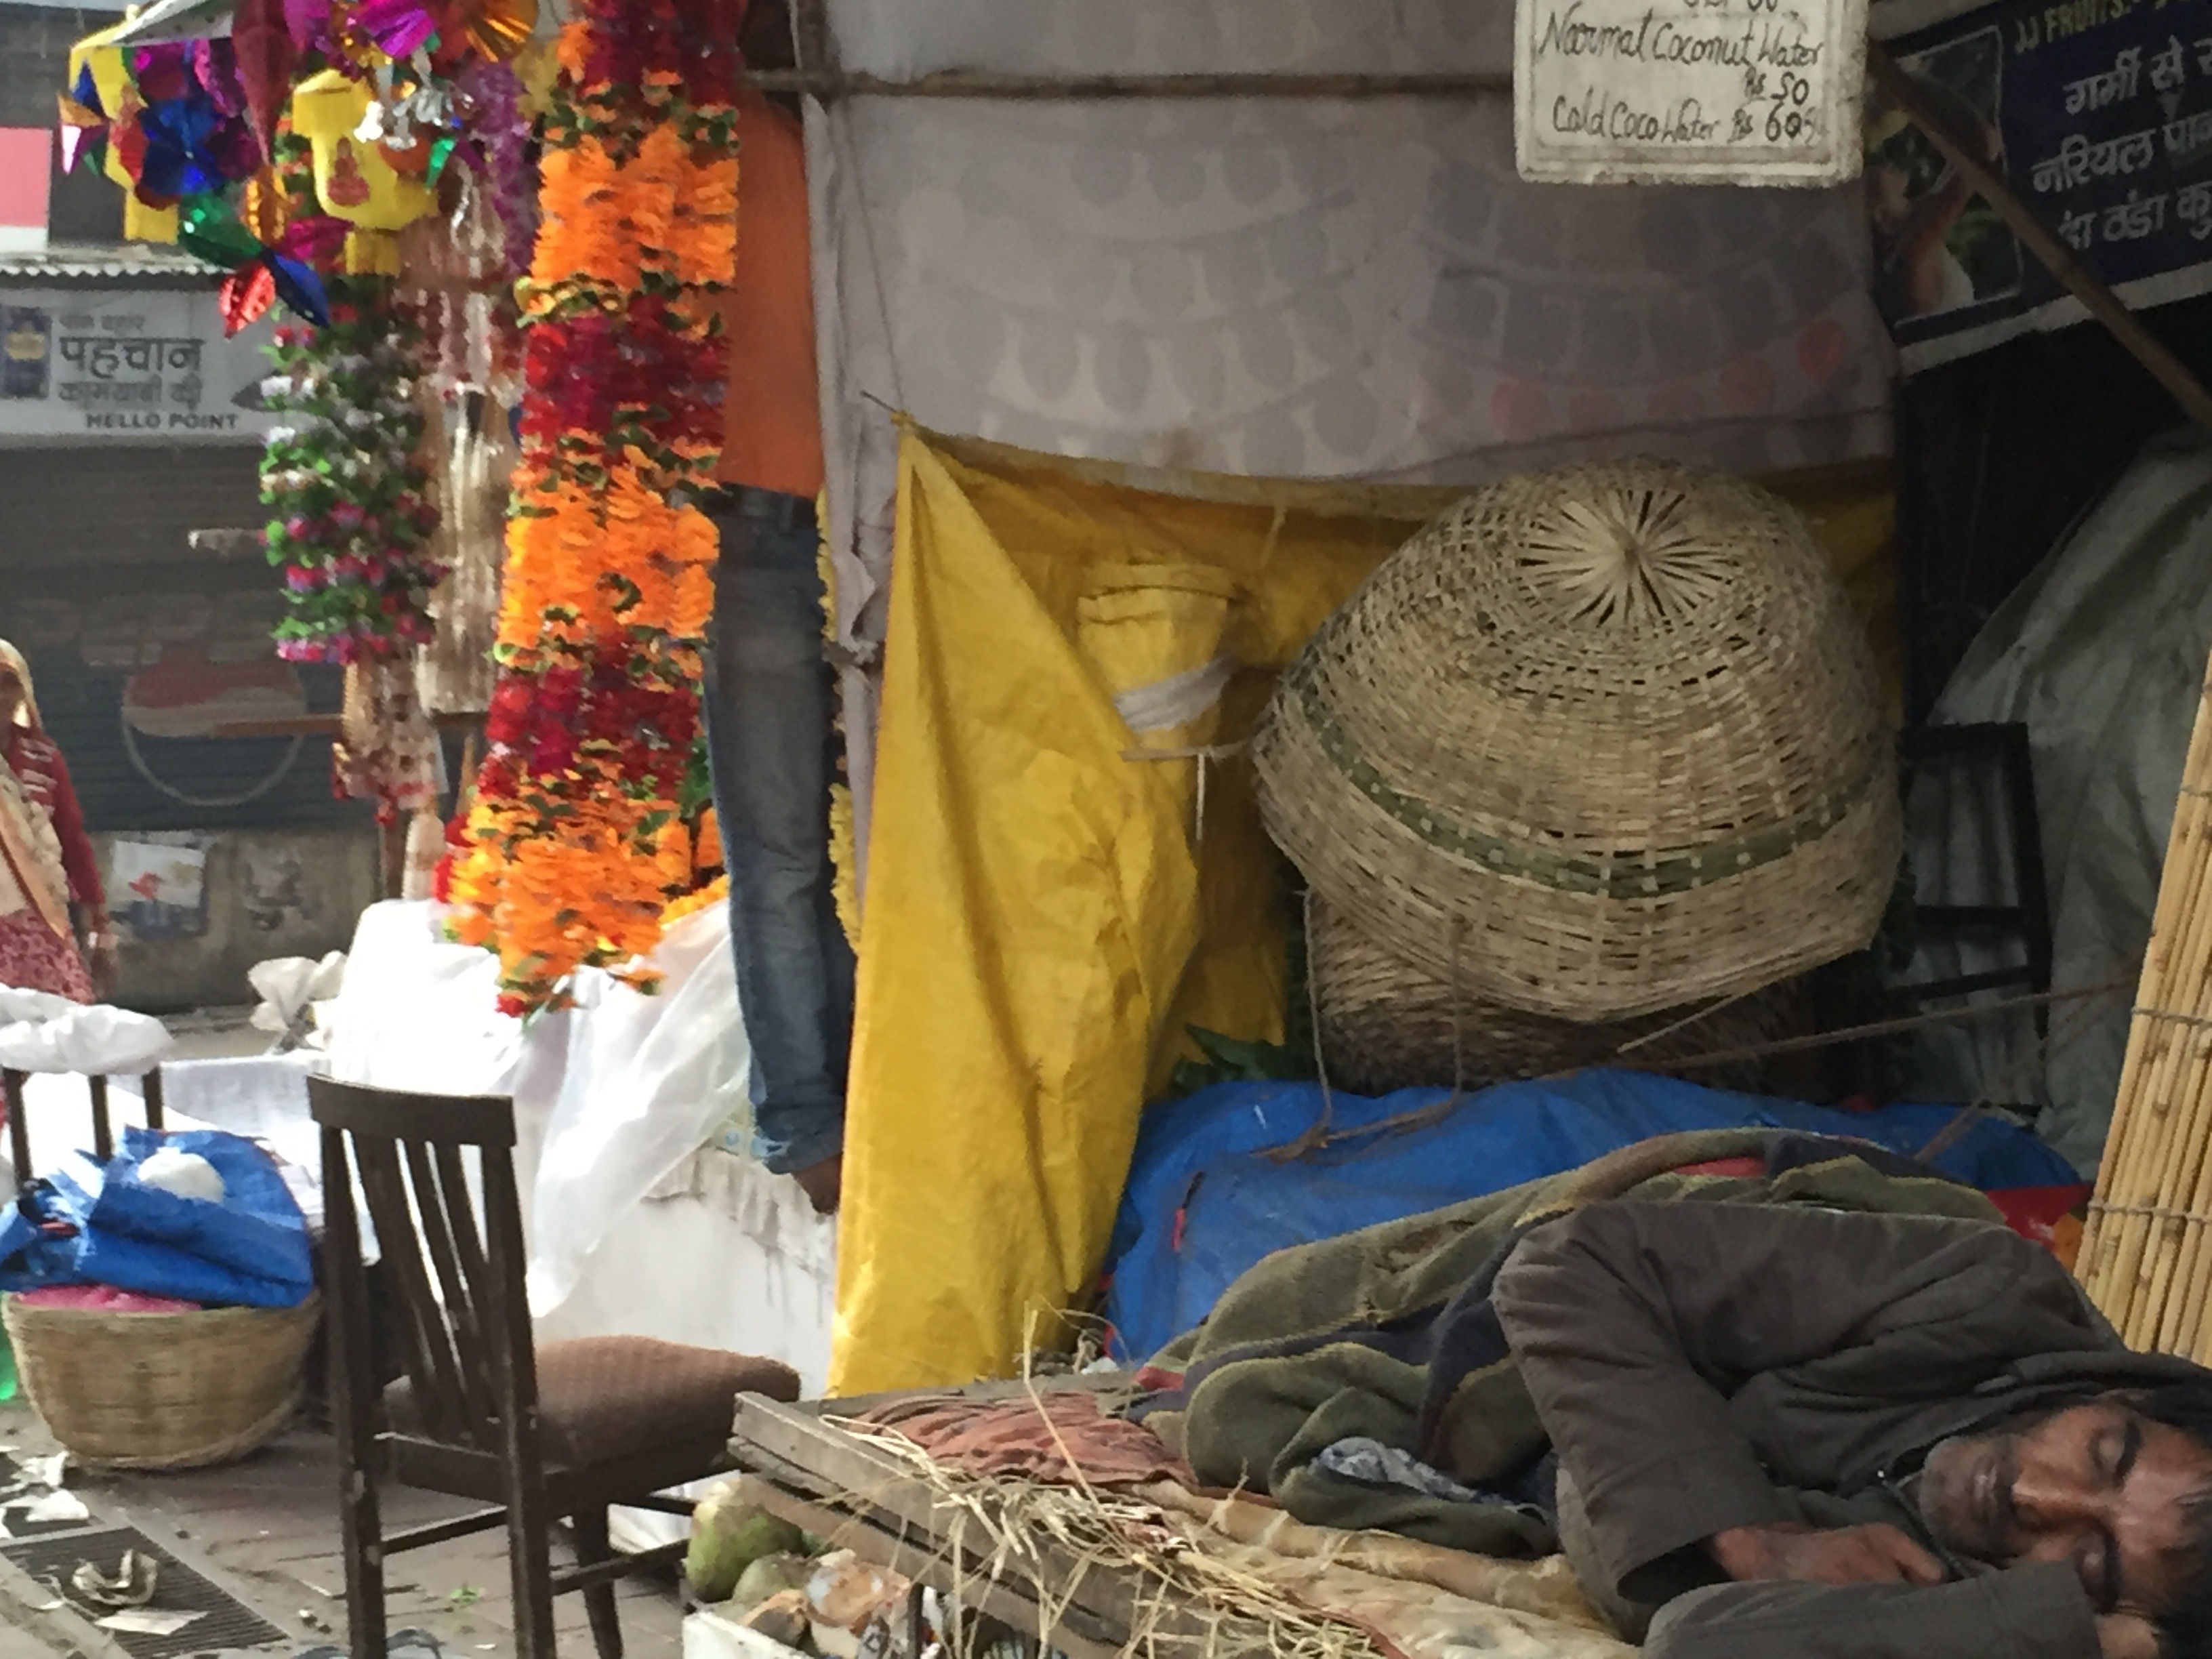 Coconut water vendor asleep in Indian market.